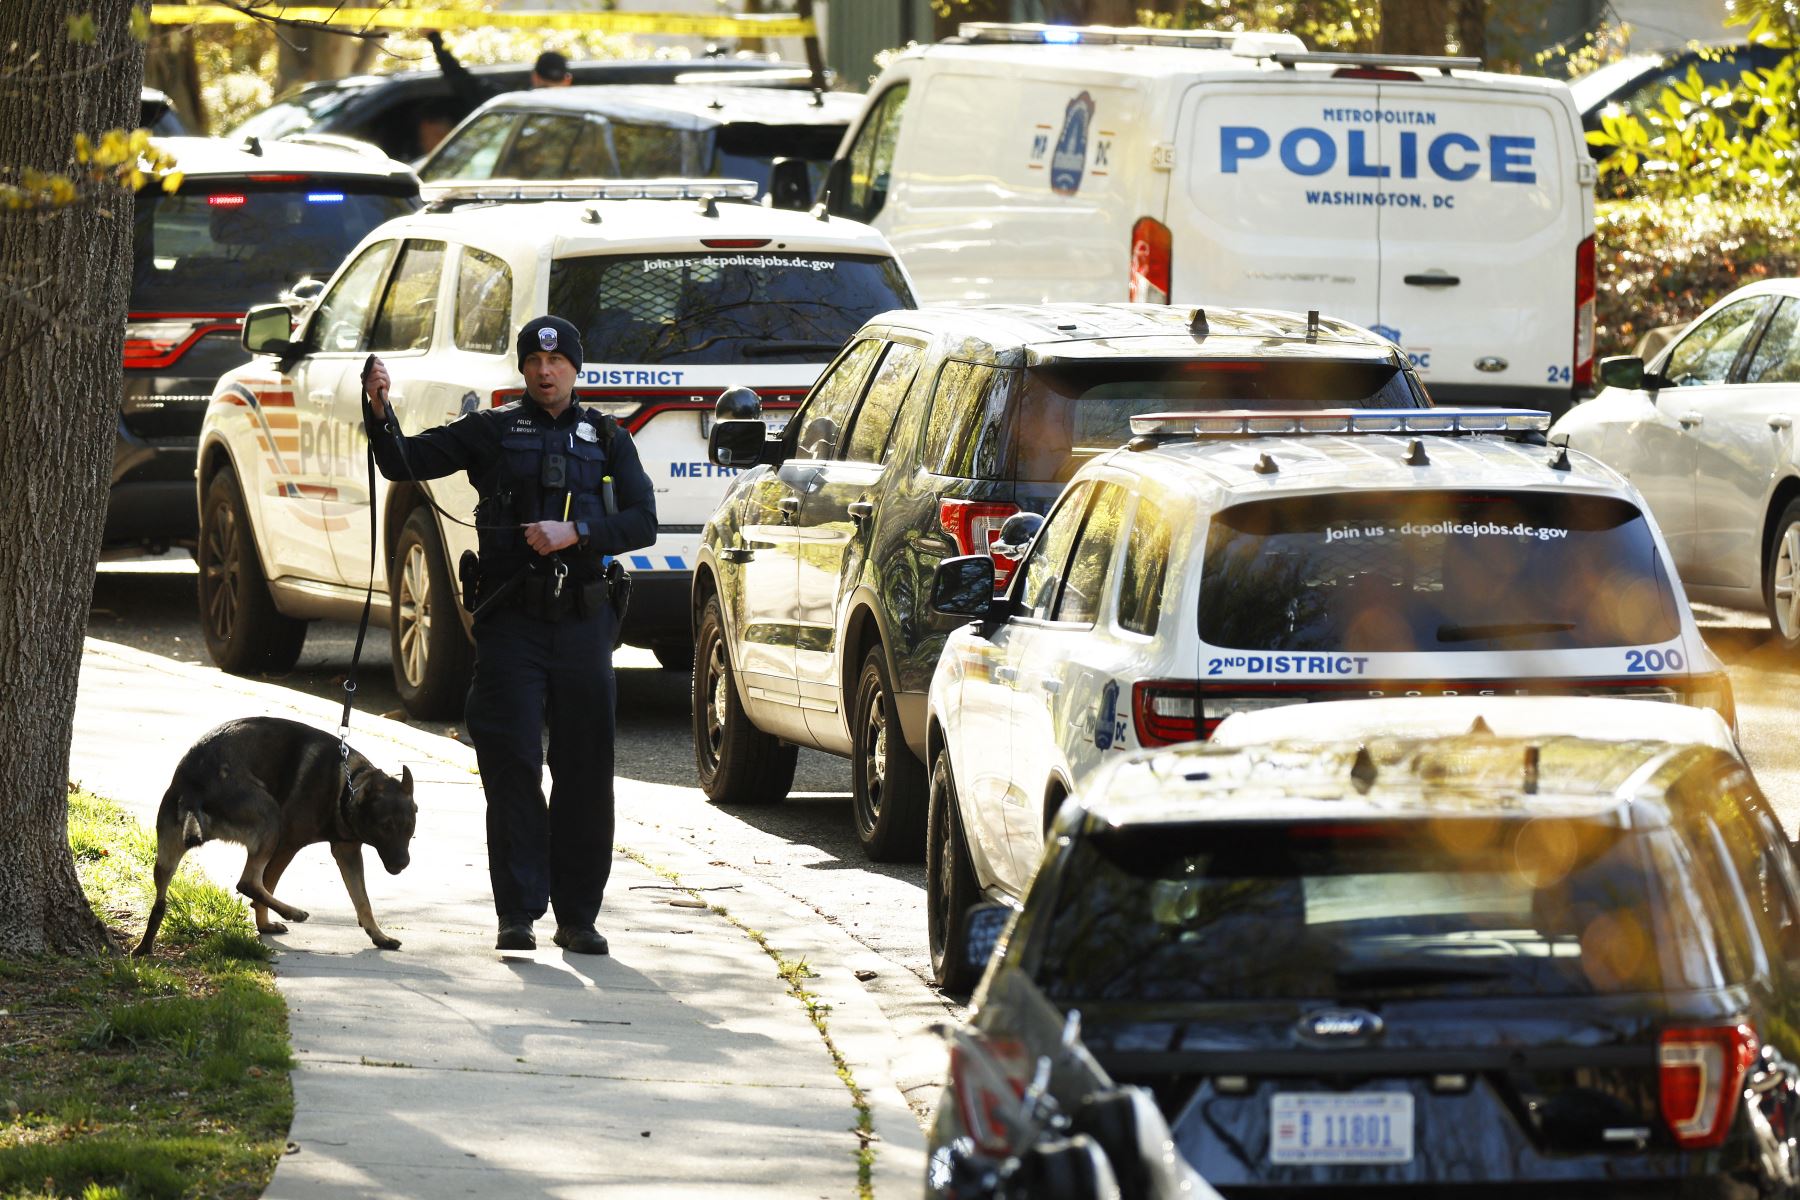 Un oficial de la Policía Metropolitana controla el tráfico en la calle cerca de la Embajada de Perú después de que oficiales del Servicio Secreto de los EE. UU. dispararan y mataran a una persona que había entrado sin autorización a la embajada temprano en la mañana en el vecindario Tony Chevy Chase el 20 de abril de 2022 en Washington, DC. Foto: AFP